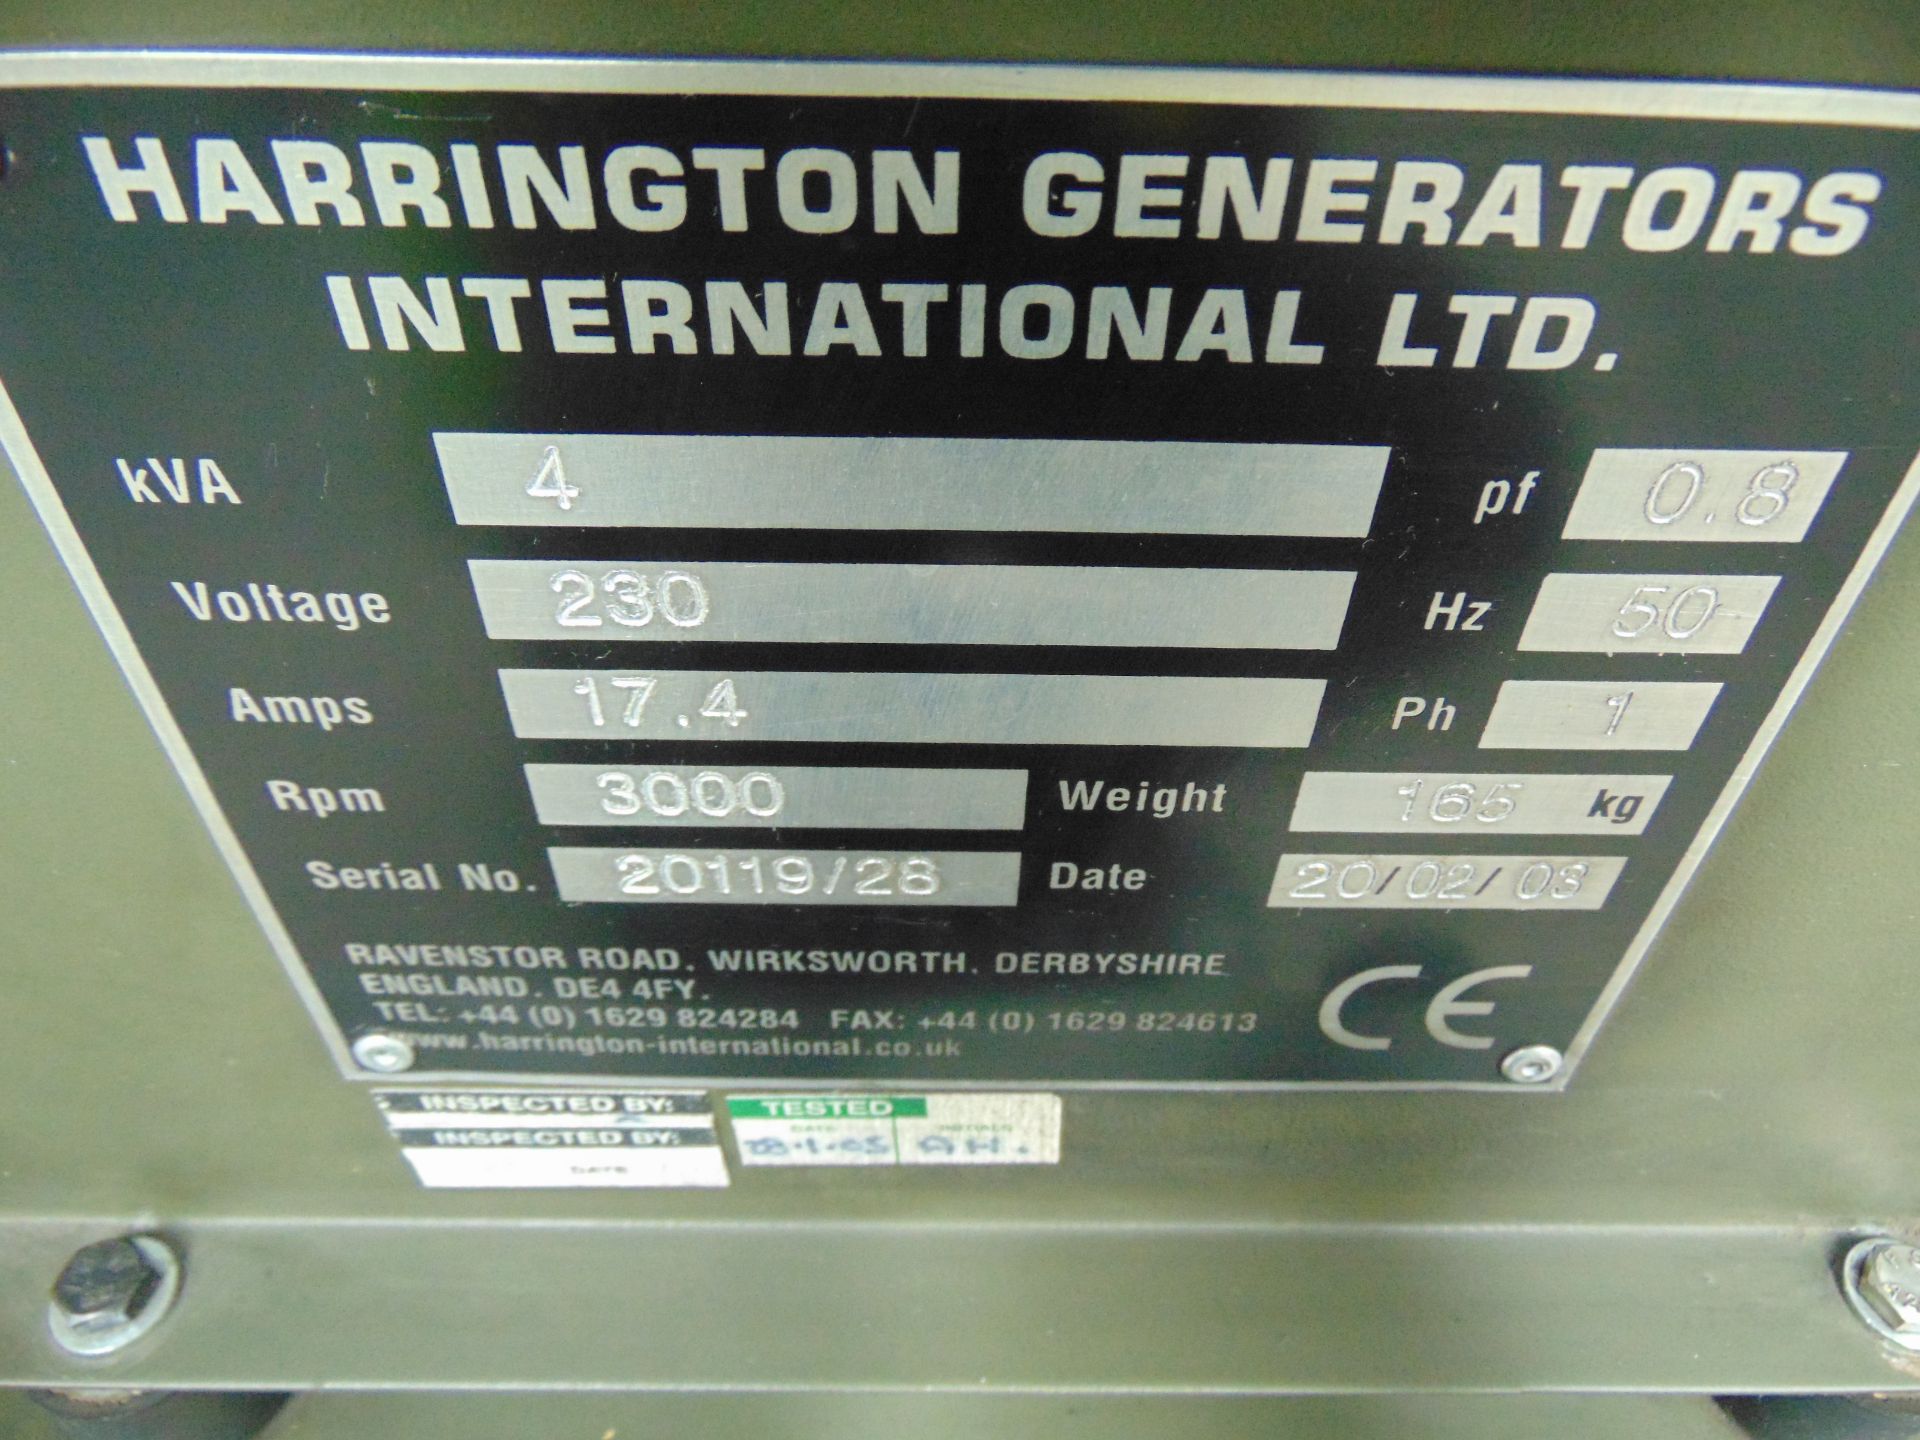 Harrington 4 kVA, 230V Diesel Generator - Bild 9 aus 9